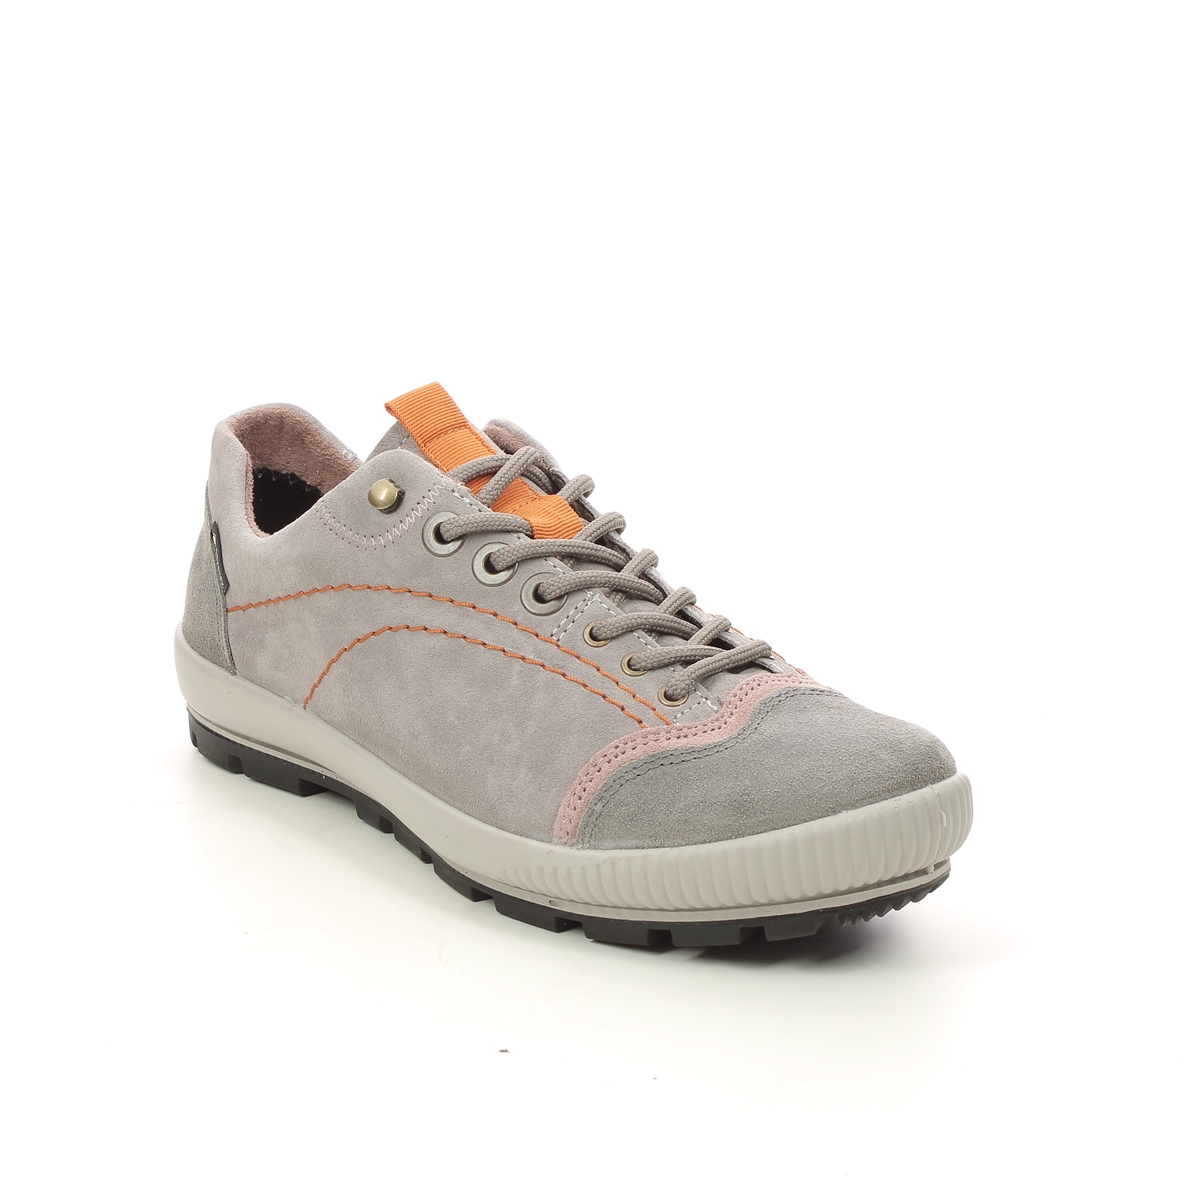 Legero Tanaro Trek Gtx LIGHT GREY SUEDE Womens Walking Shoes 2000122-2900 in a Plain Leather in Size 7.5